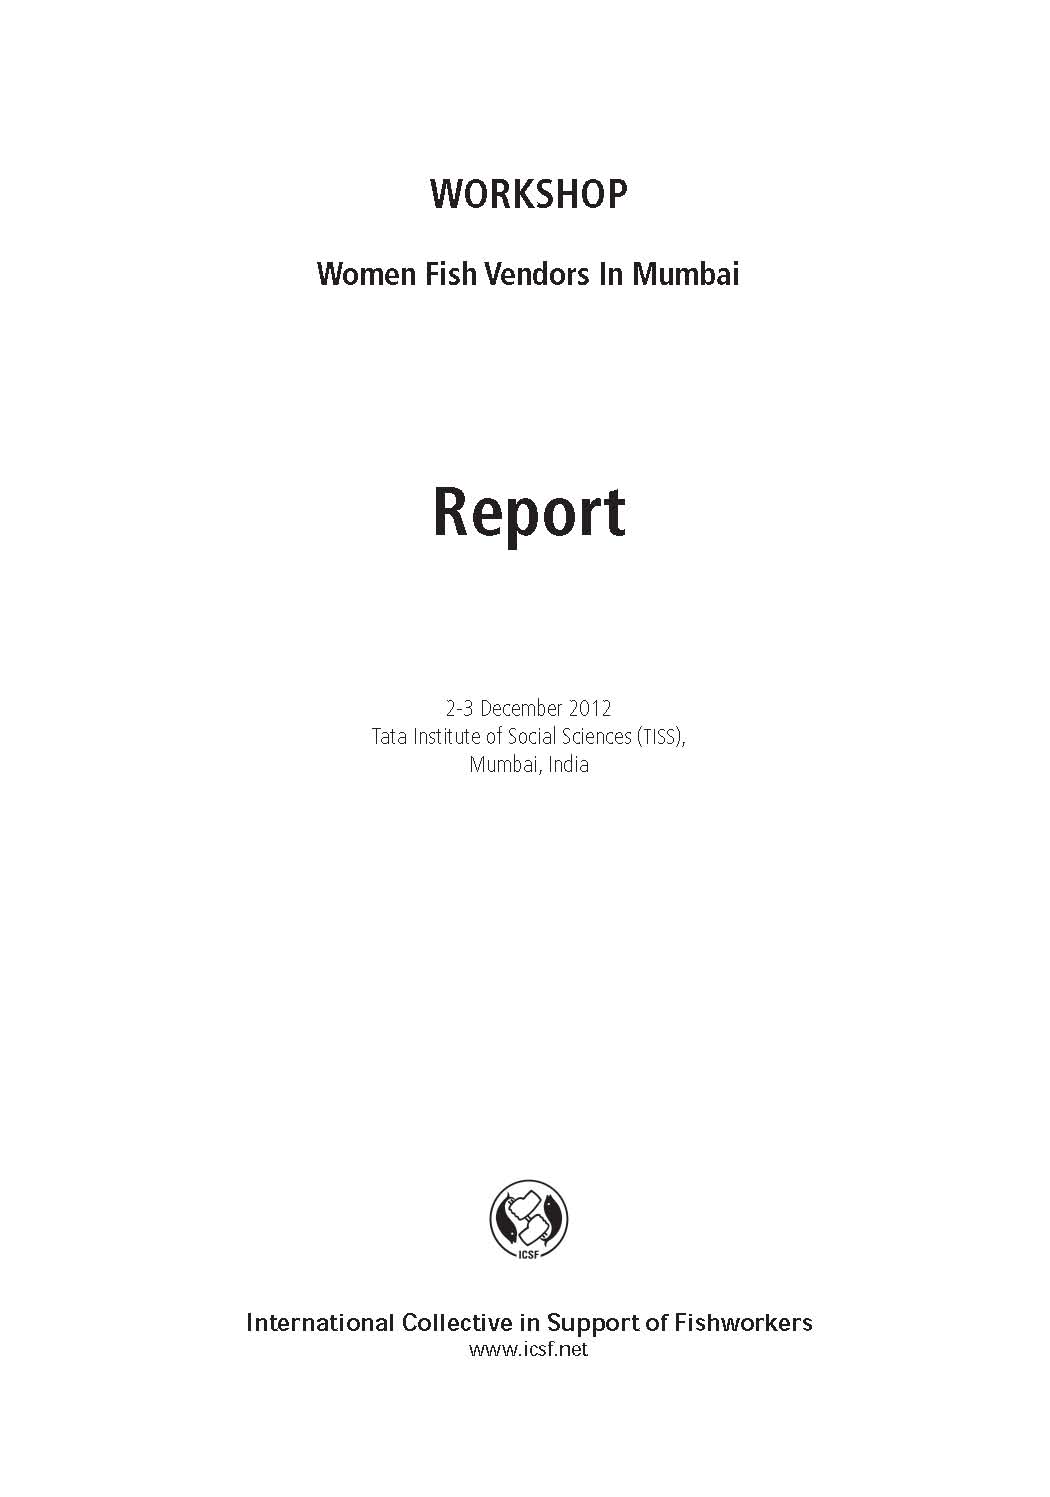 Women Fish Vendors in Mumbai: Report of the Workshop on Women Fish Vendors In Mumbai, Tata Institute of Social Sciences (TISS), 2-3 December 2012, Mumbai, India